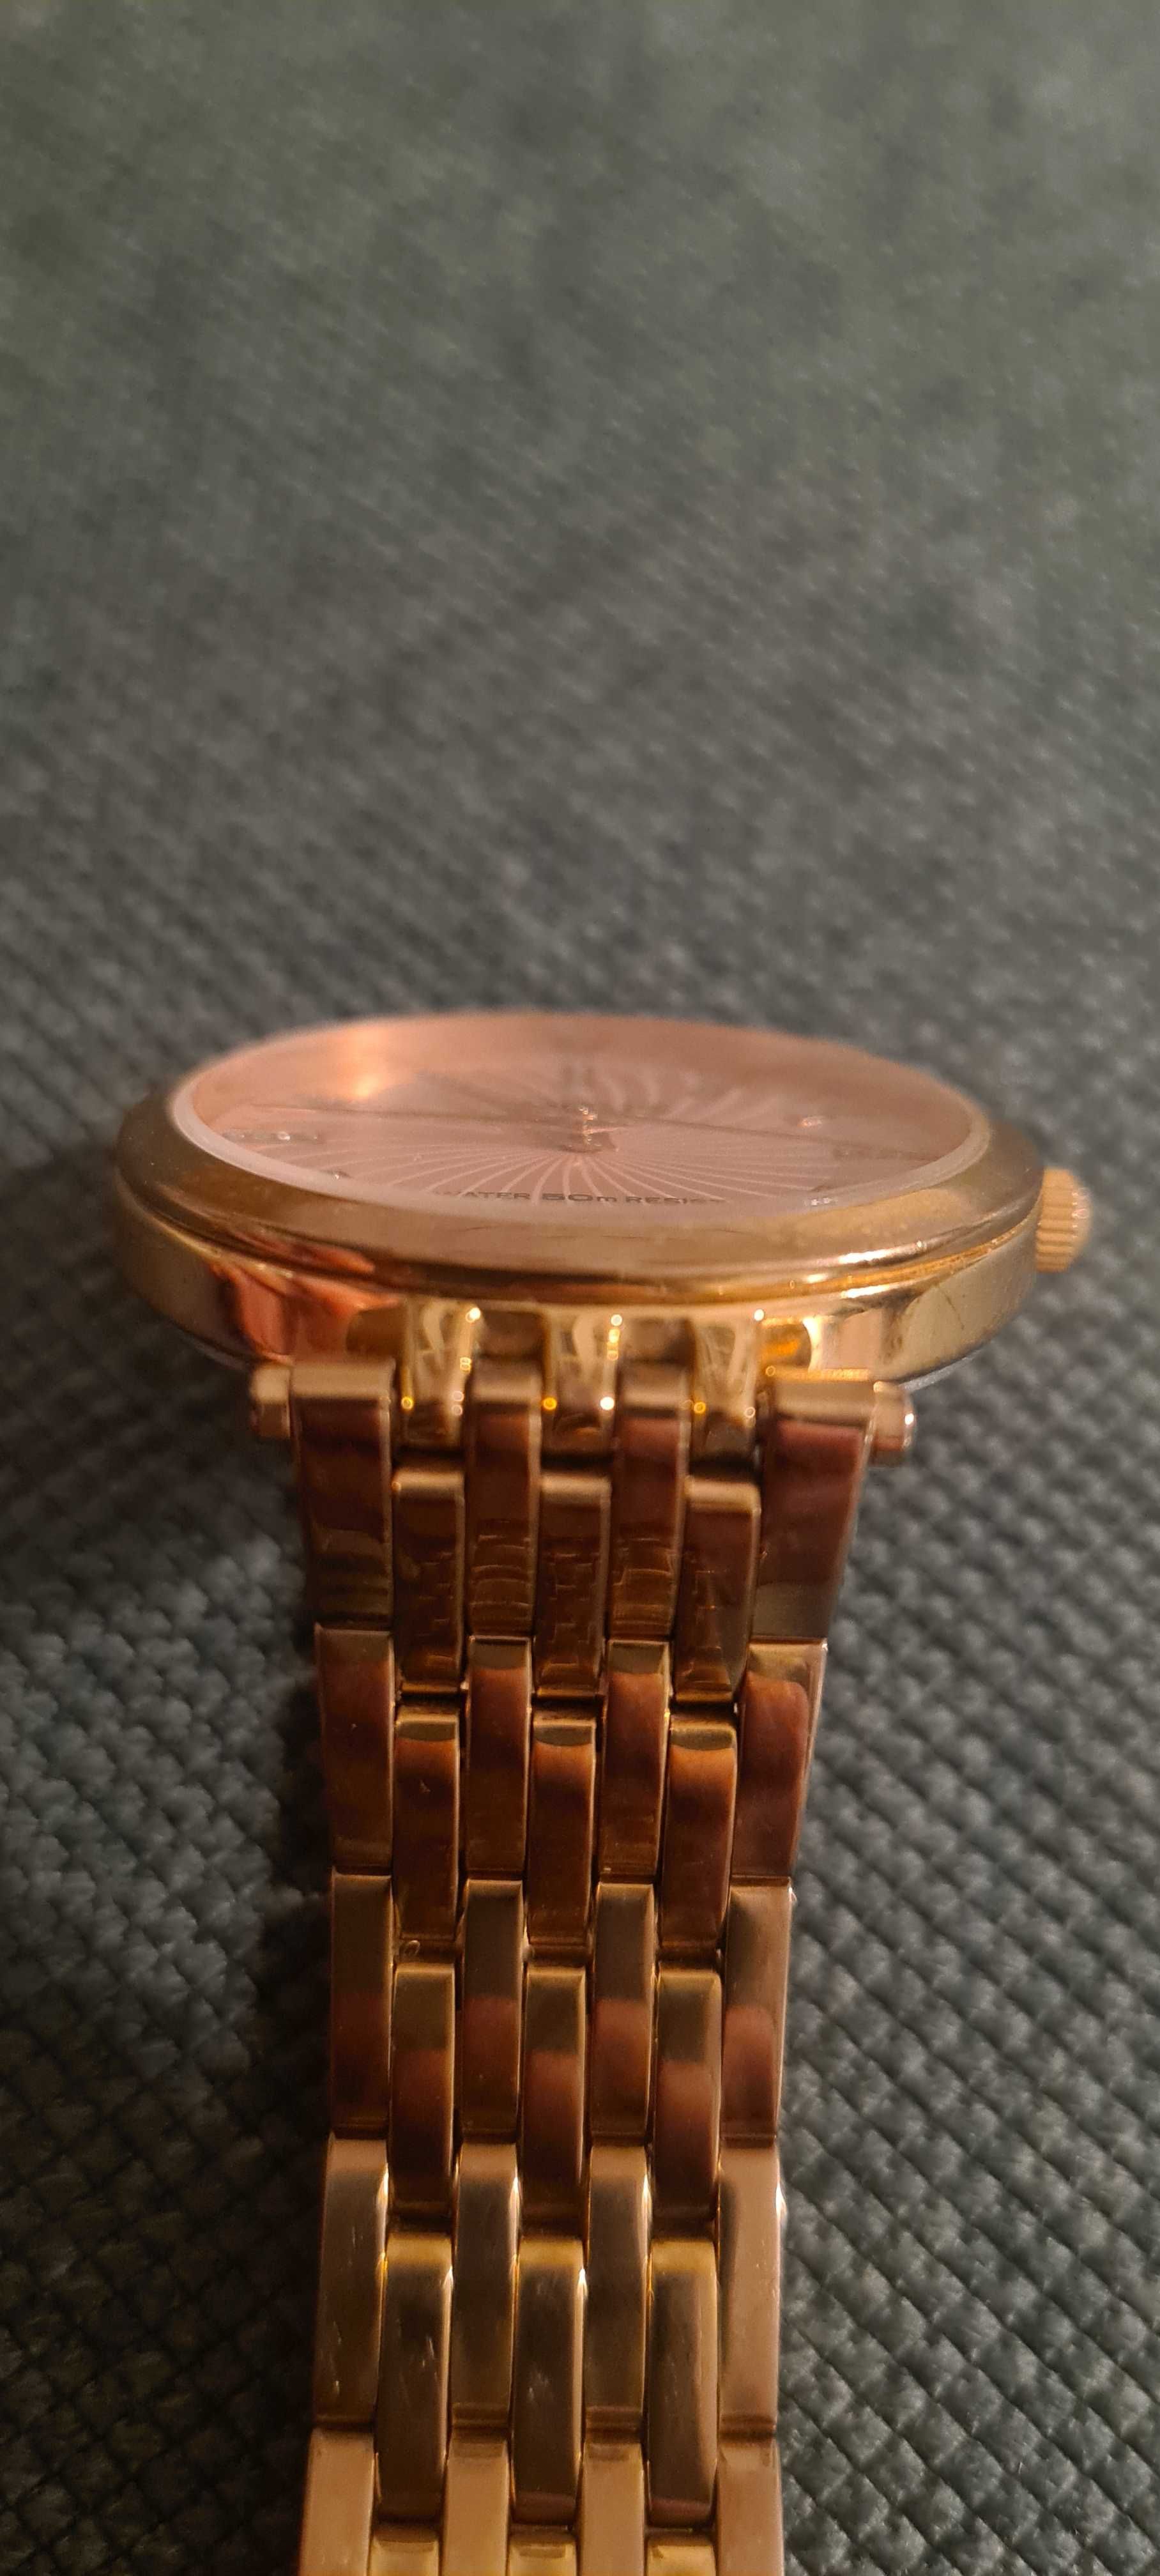 Elegancki zegarek damski Lorus, bransoleta, różowe złoto